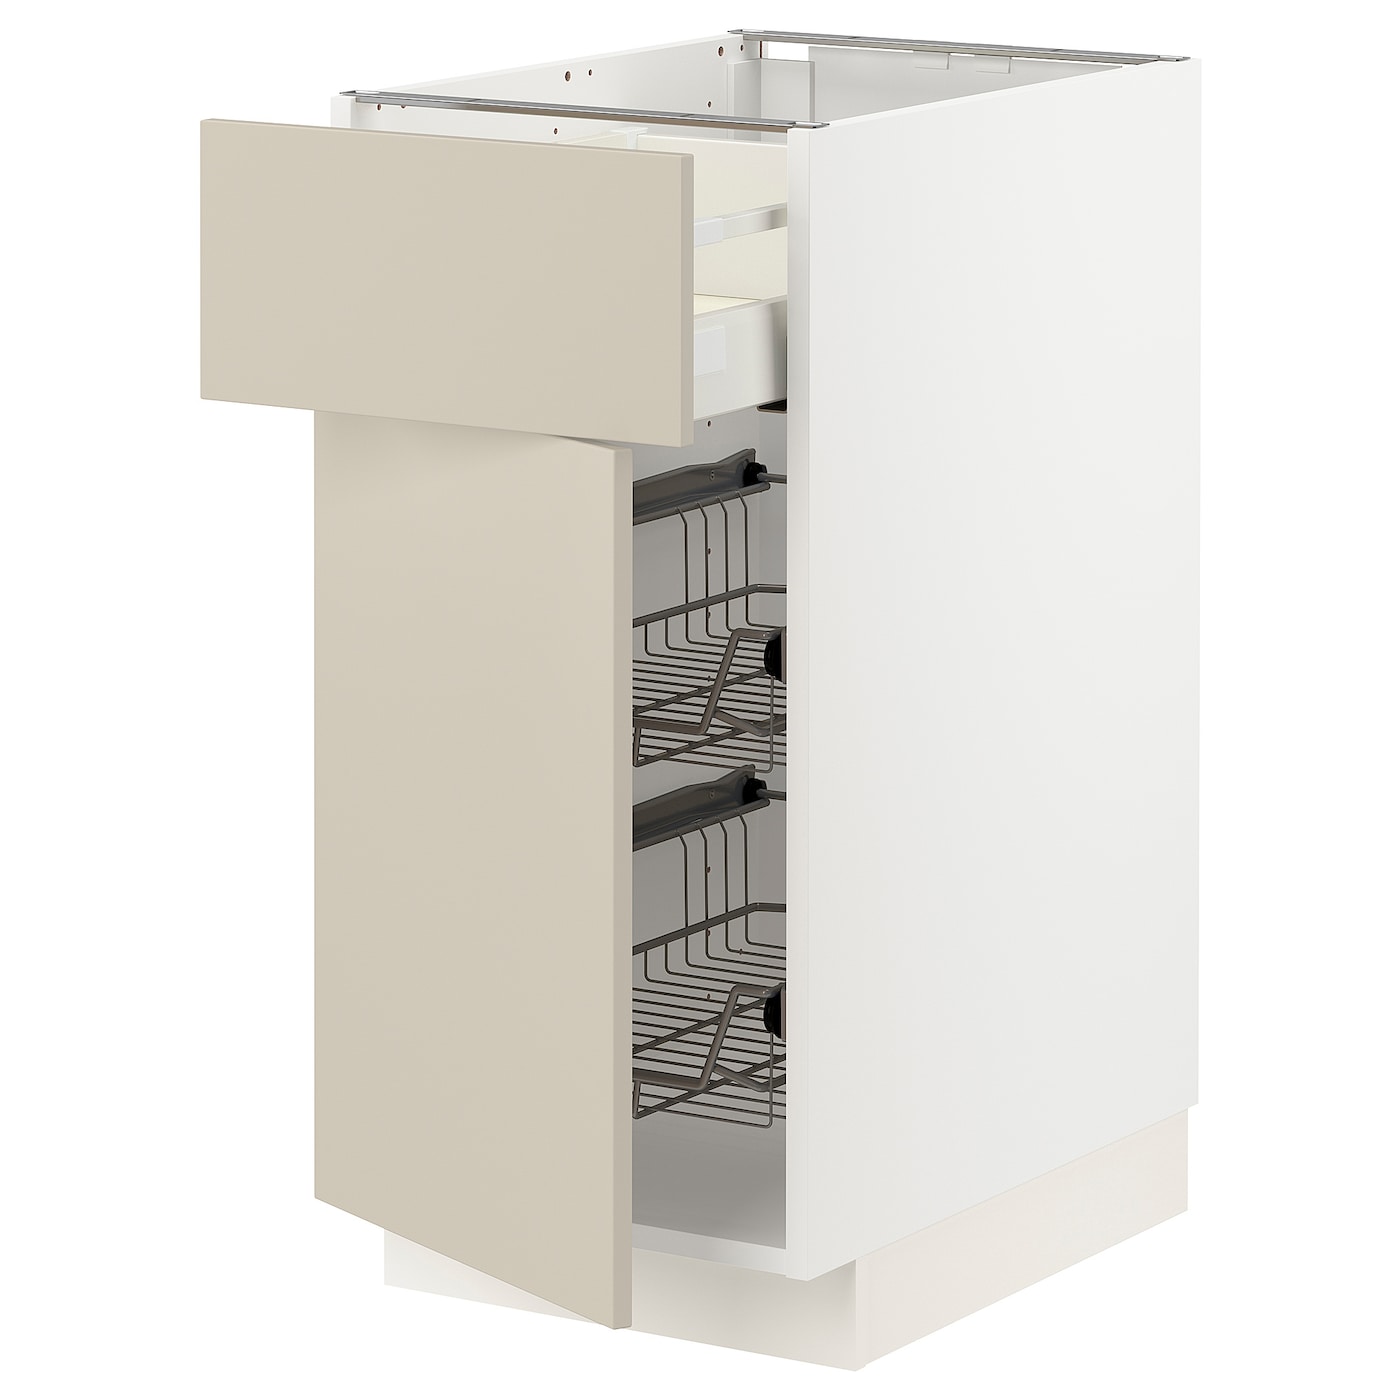 Напольный кухонный шкаф  - IKEA METOD MAXIMERA, 88x62x40см, белый/бежевый, МЕТОД МАКСИМЕРА ИКЕА